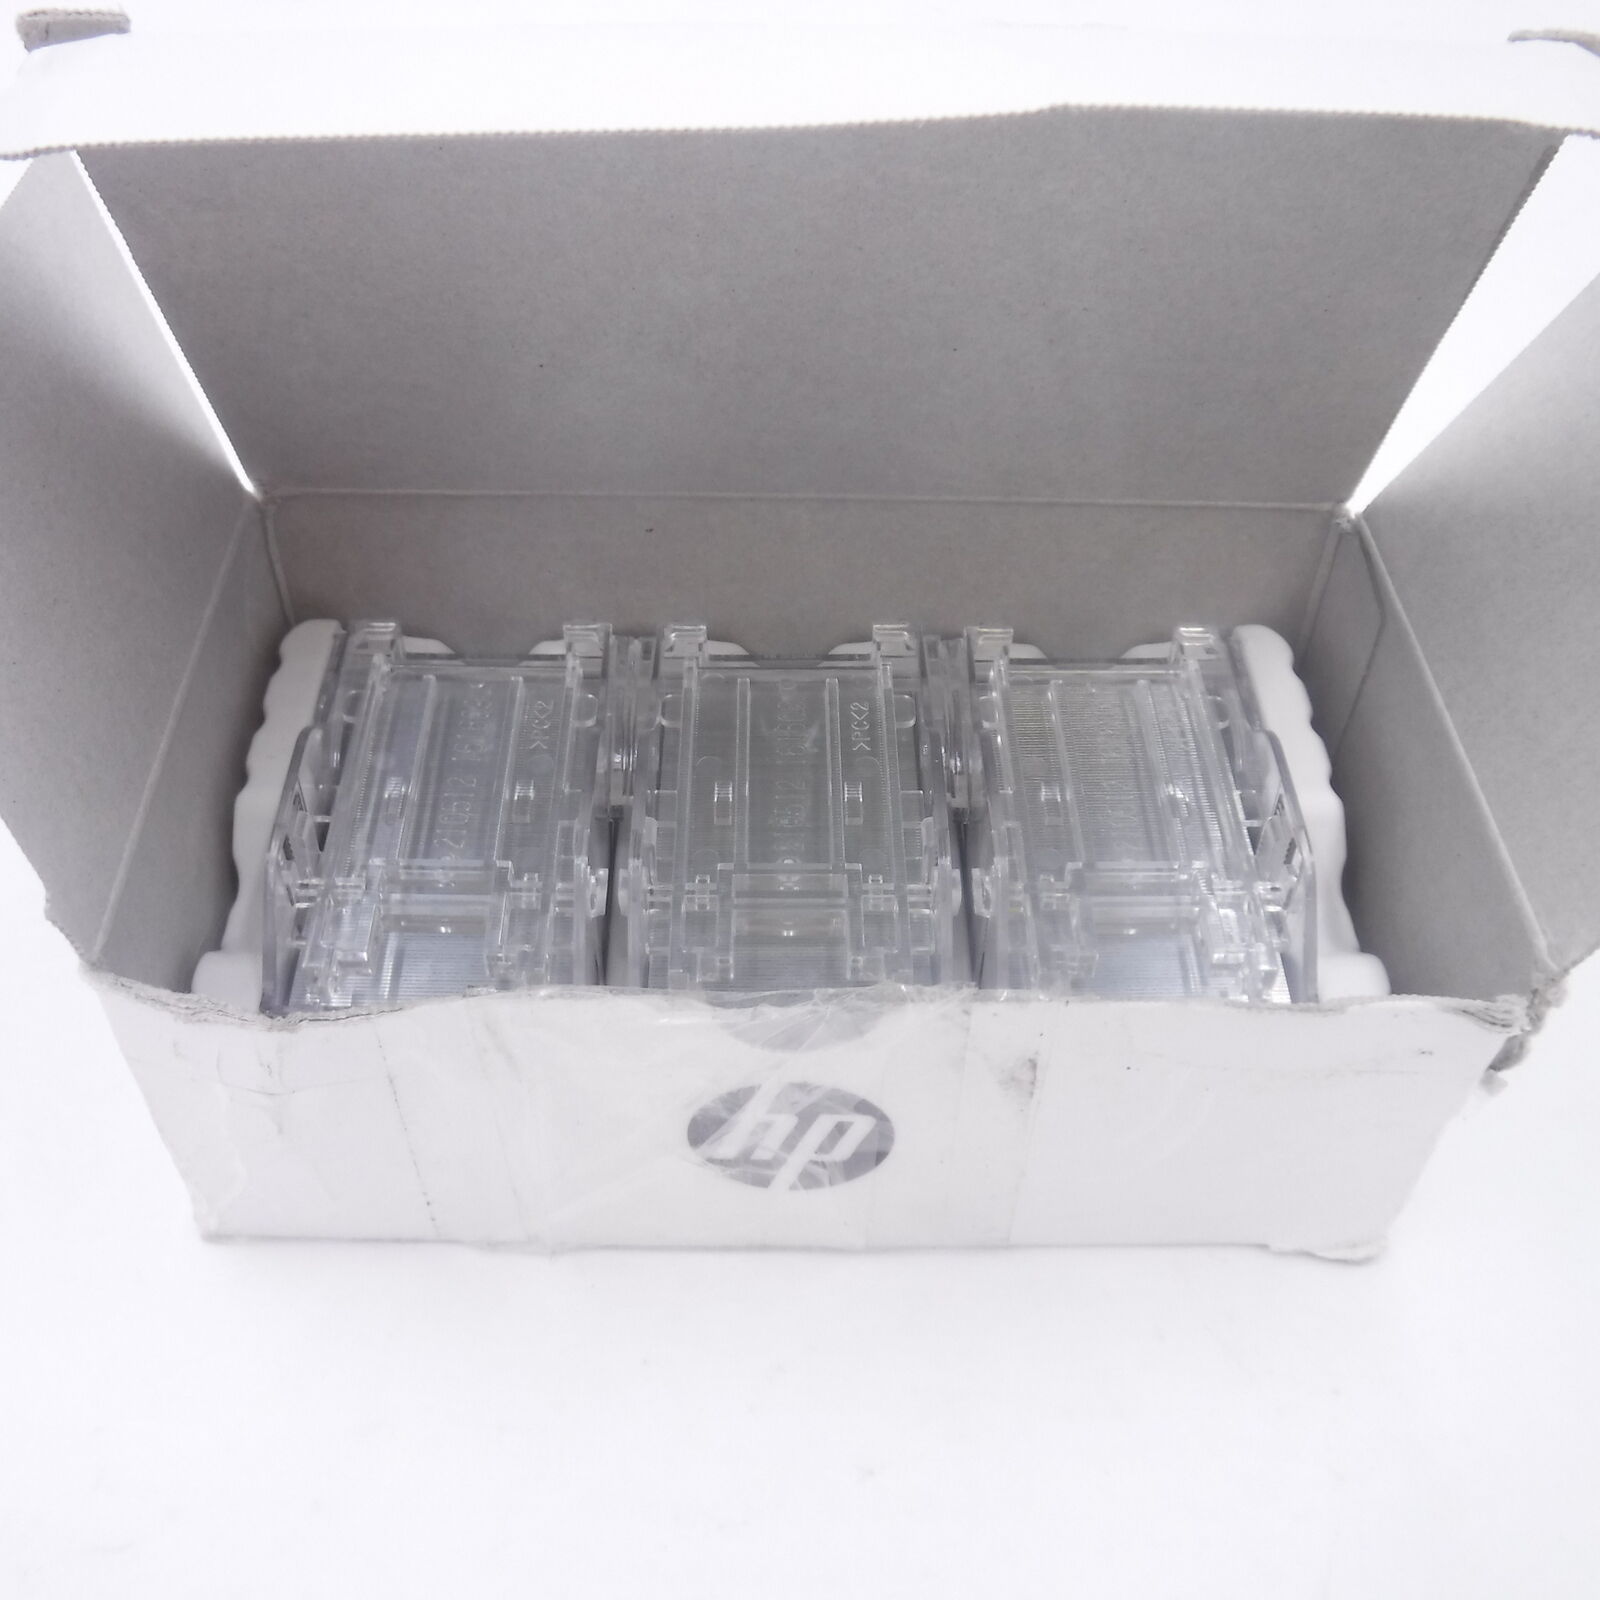 Genuine OEM 3 Cartridges HP Staples Y1G14A 15,000 Total